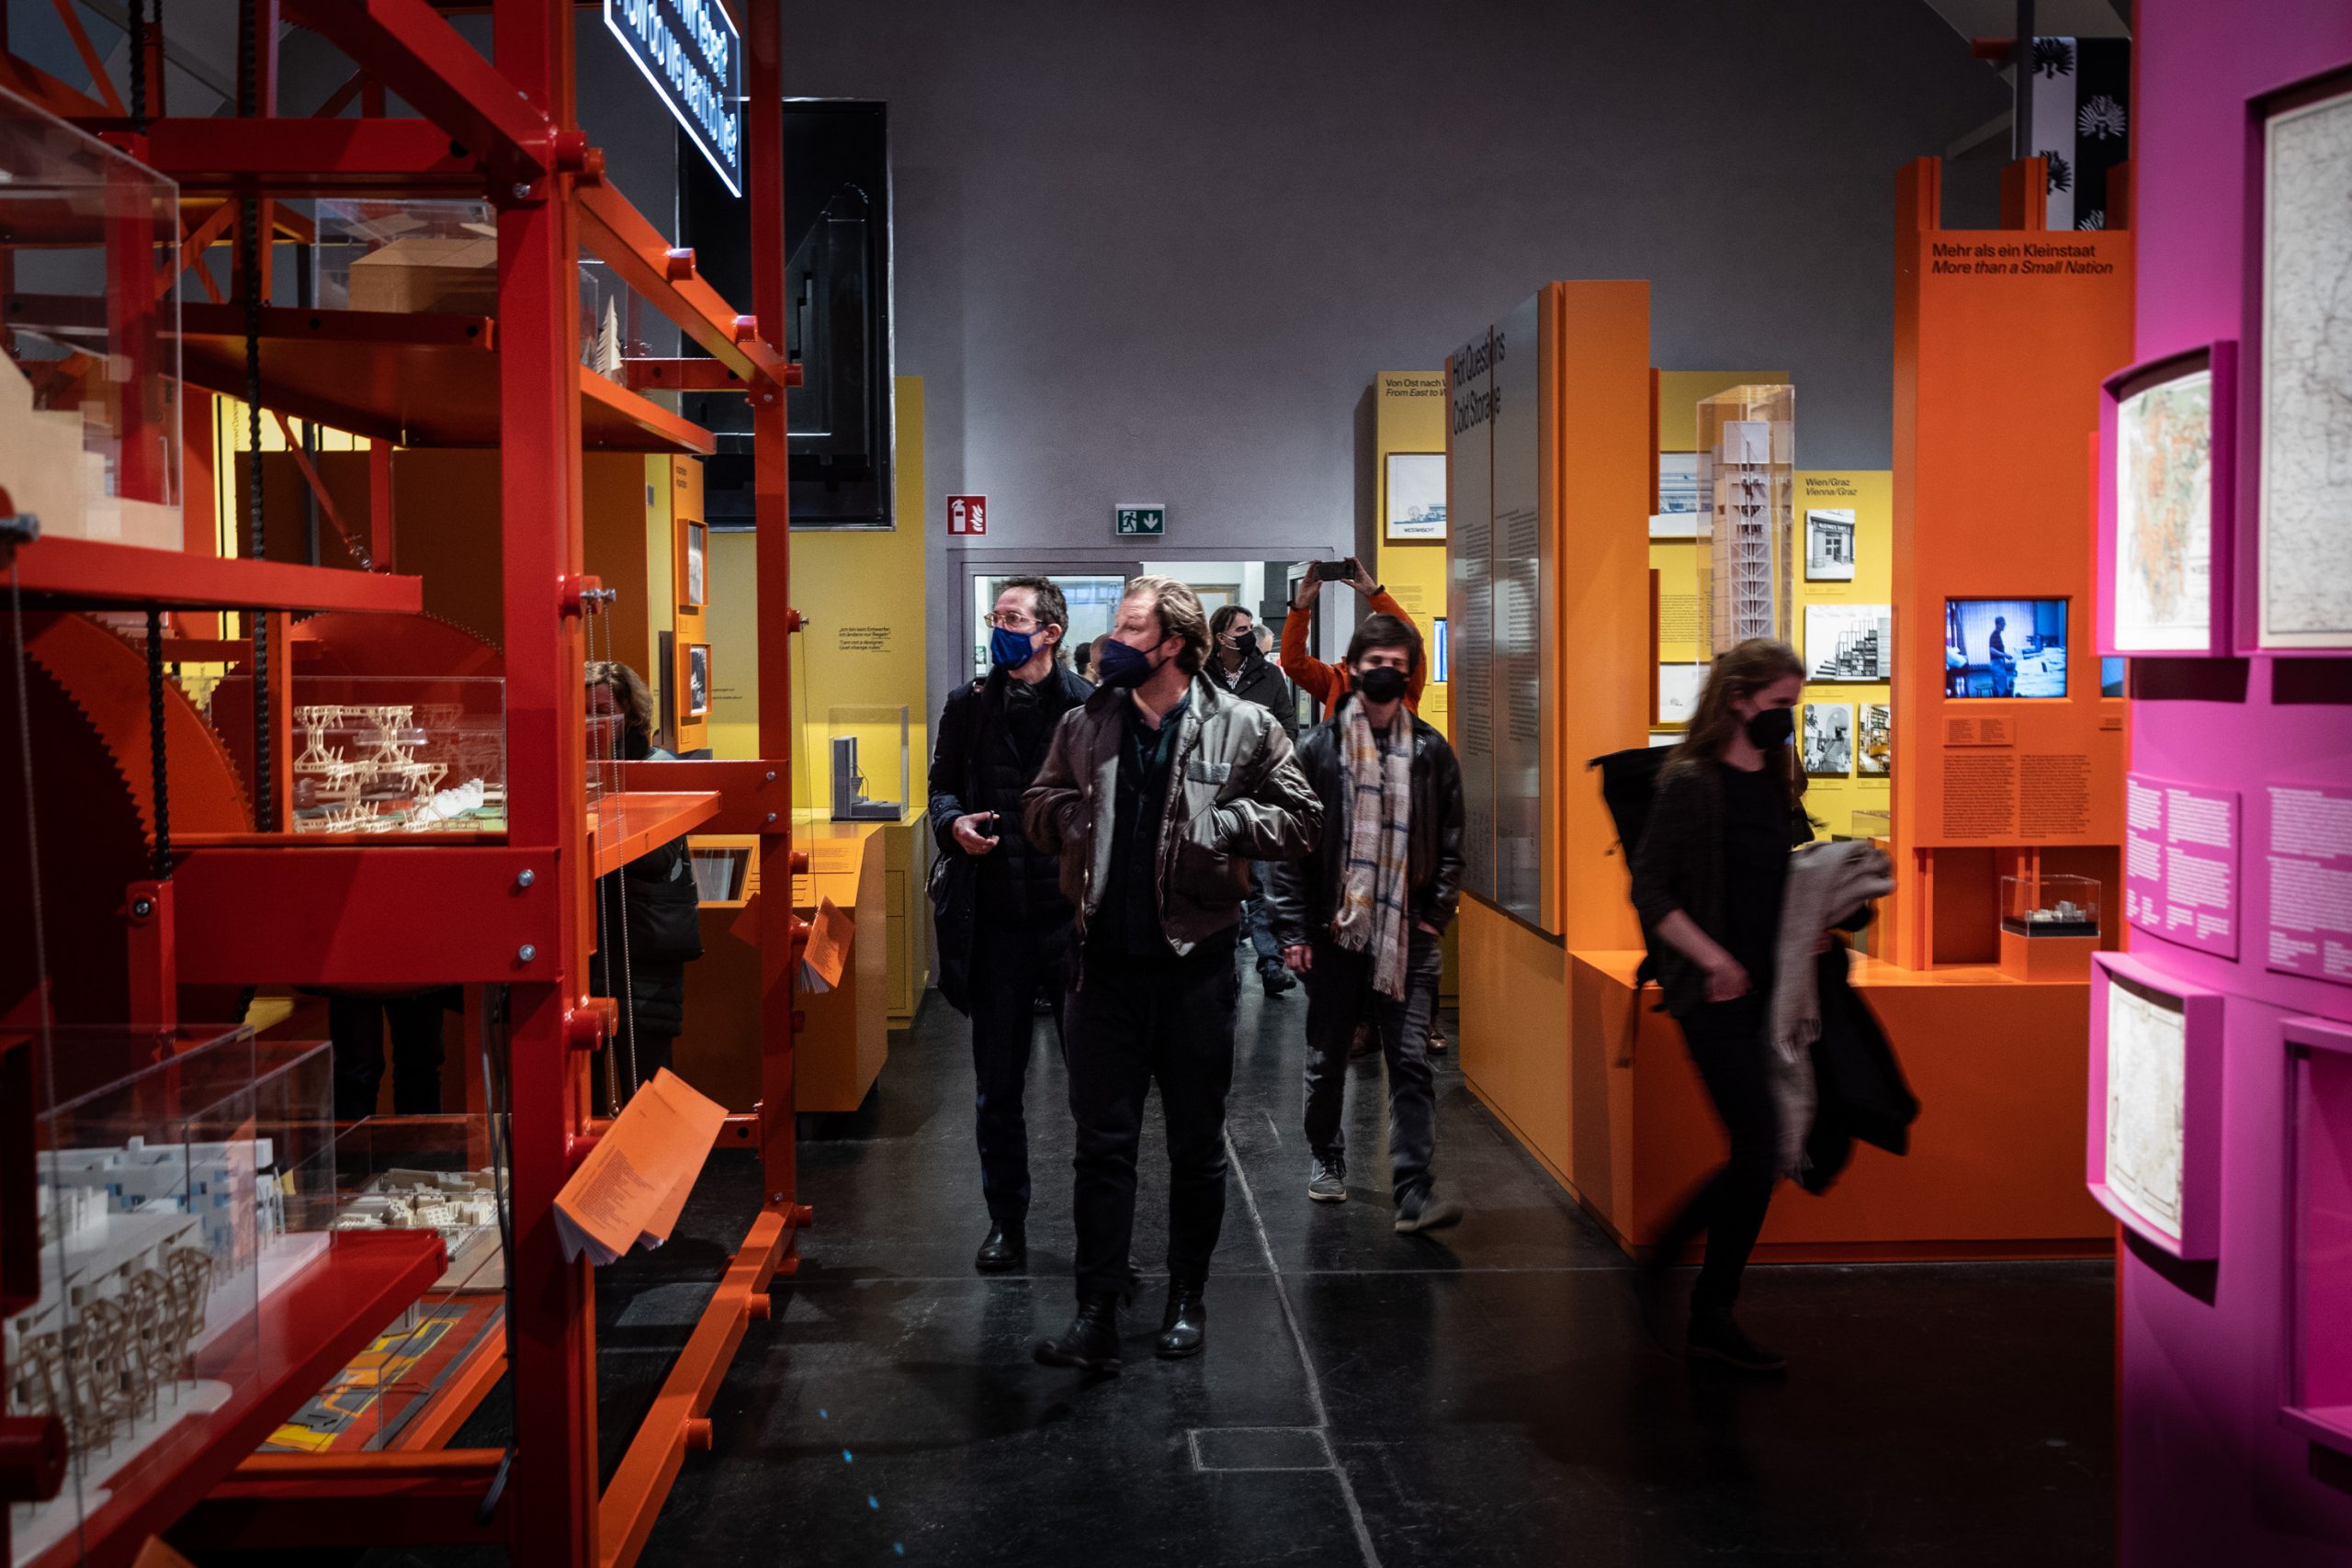 Gruppe von Menschen geht in Ausstellungsraum mit großen gelben, orangen und roten Ausstellungsinstallationen